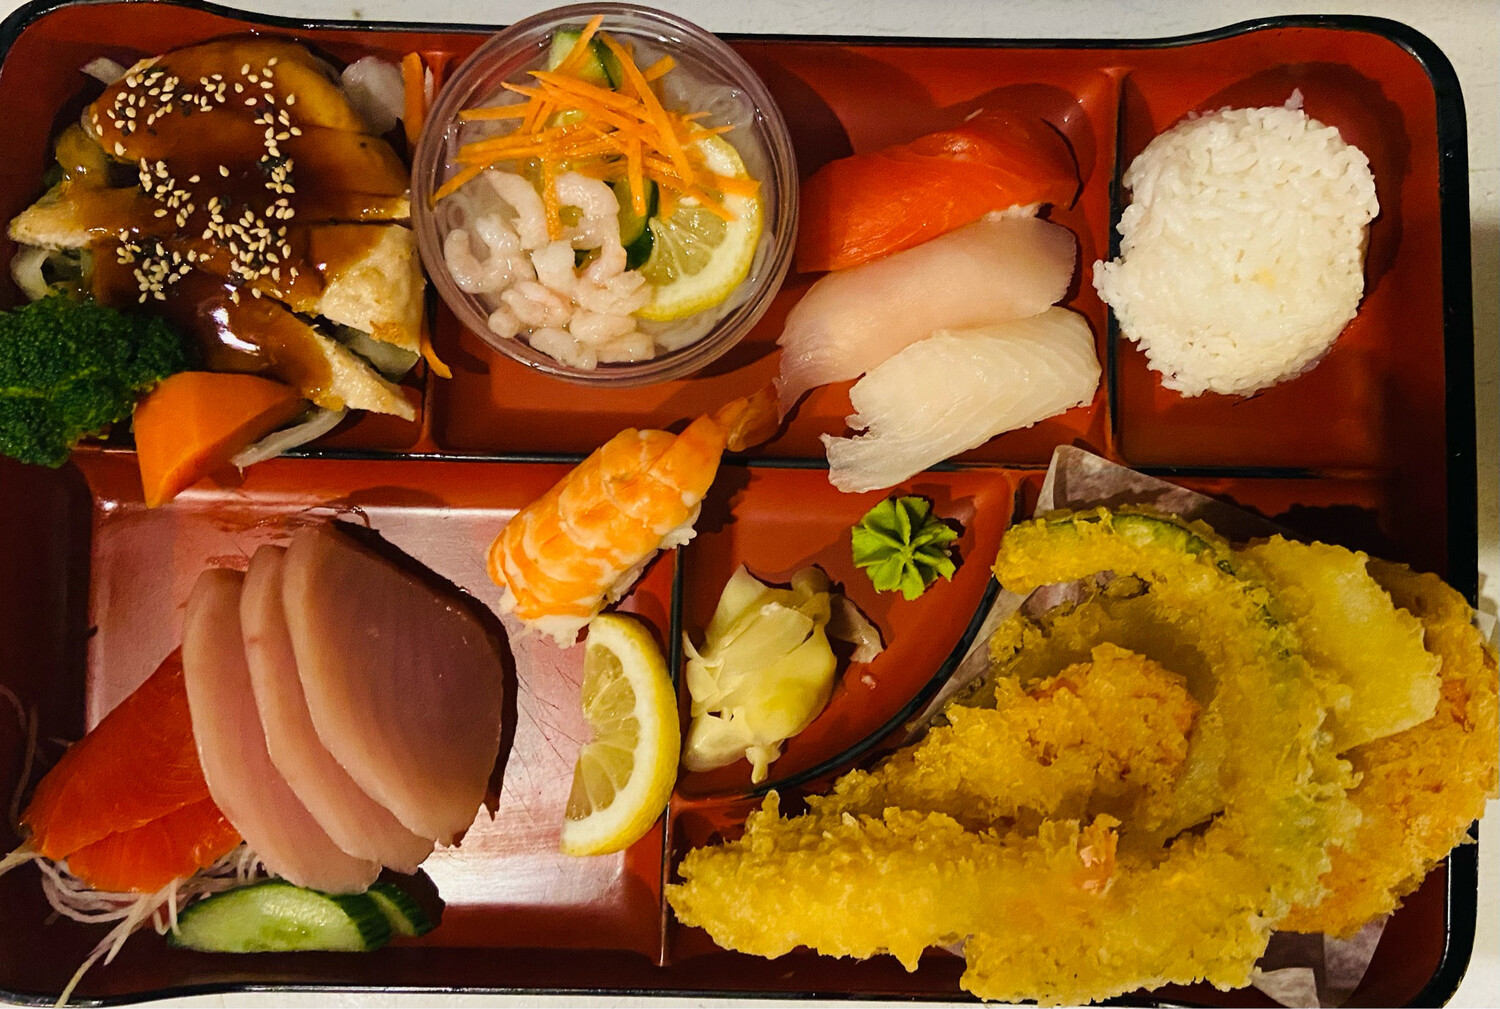 196. Sushi & Sashimi Lunch Box